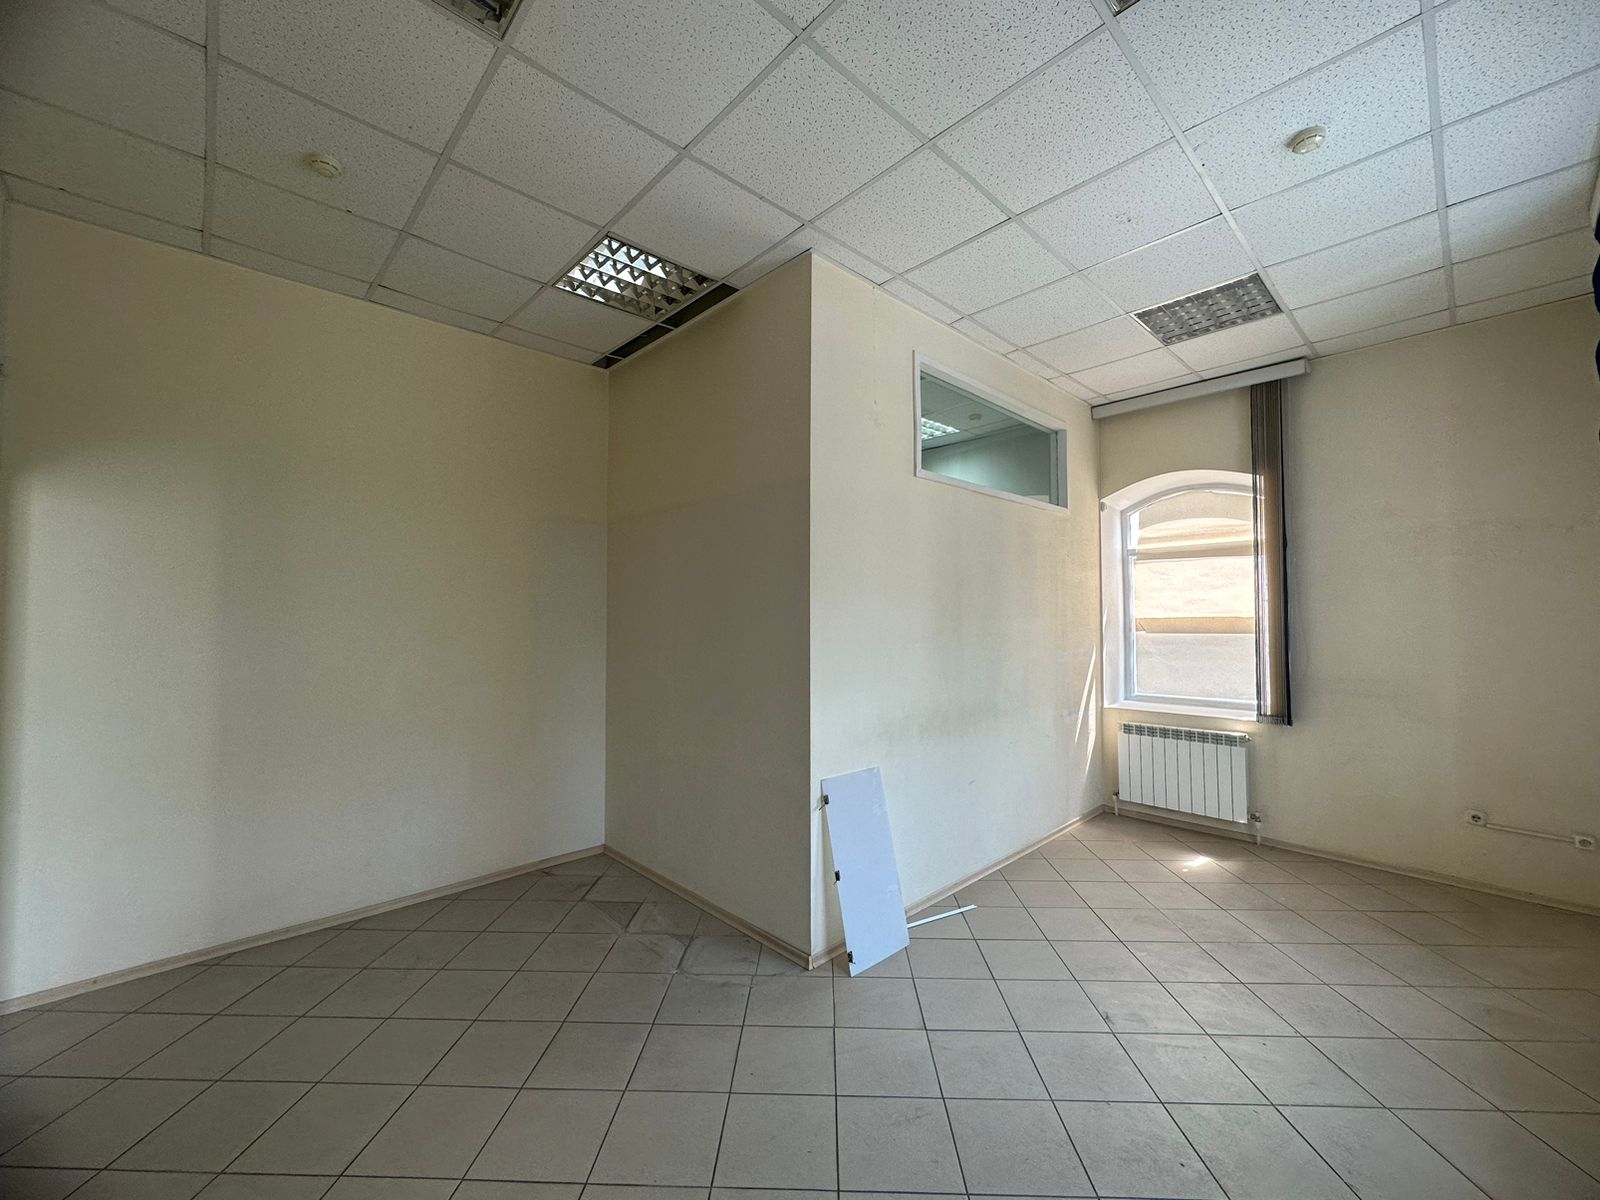 Предлагаем к аренде офисы на 2ом этаже по ул. Карла Маркса д.53, площадью 7м², напрямую от собственника._7